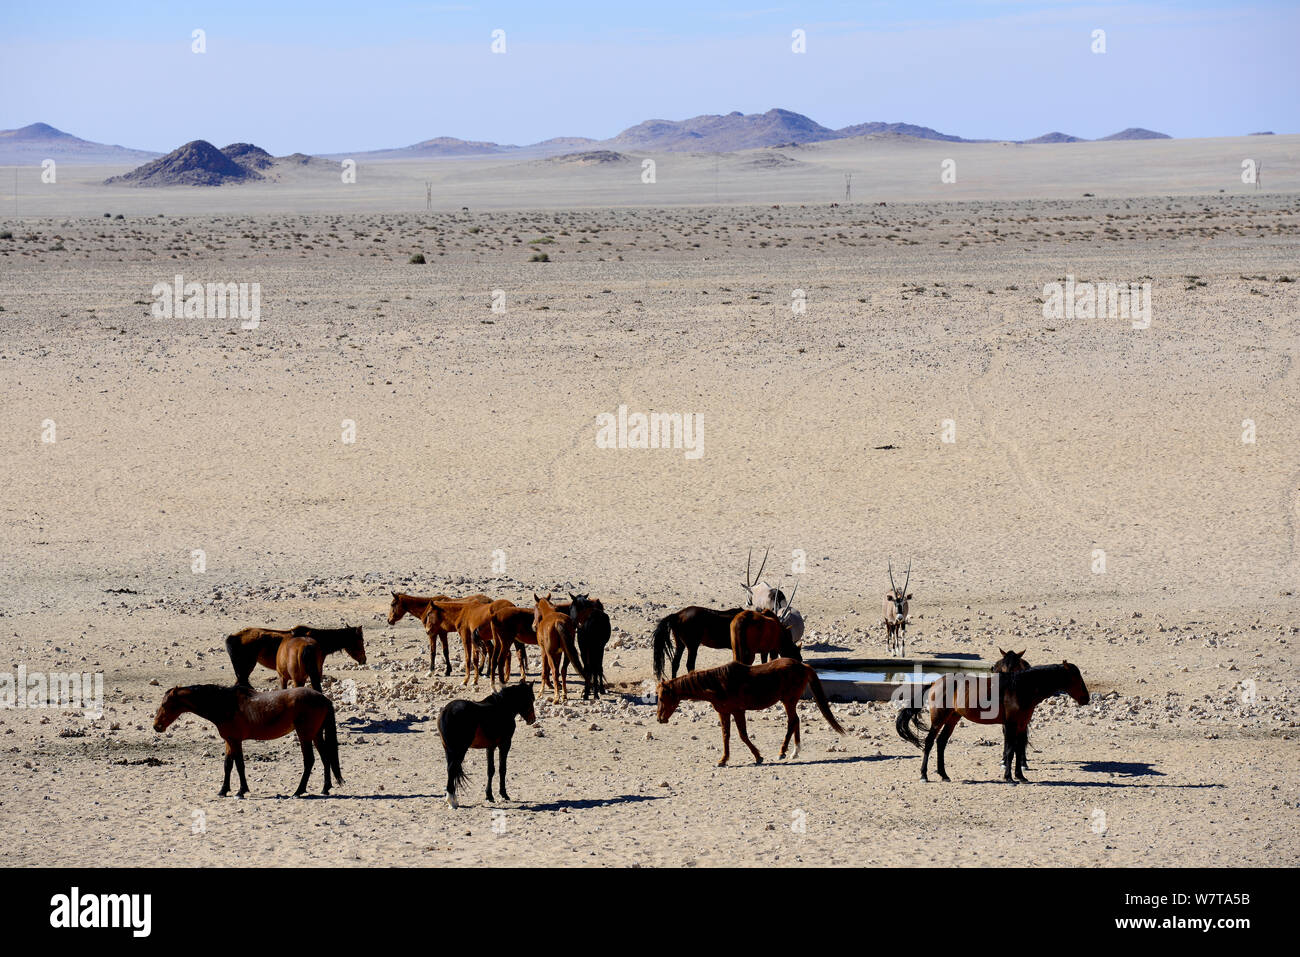 Cavalli selvaggi del Namib con un Oryx (Oryx gazella) acqua potabile a un'artificiale punto d'acqua. Questi cavalli selvaggi sono probabilmente il solo deserto selvaggio dimora di cavalli nel mondo. Garub pianura, Aus, Namib Desert, Namibia. Foto Stock